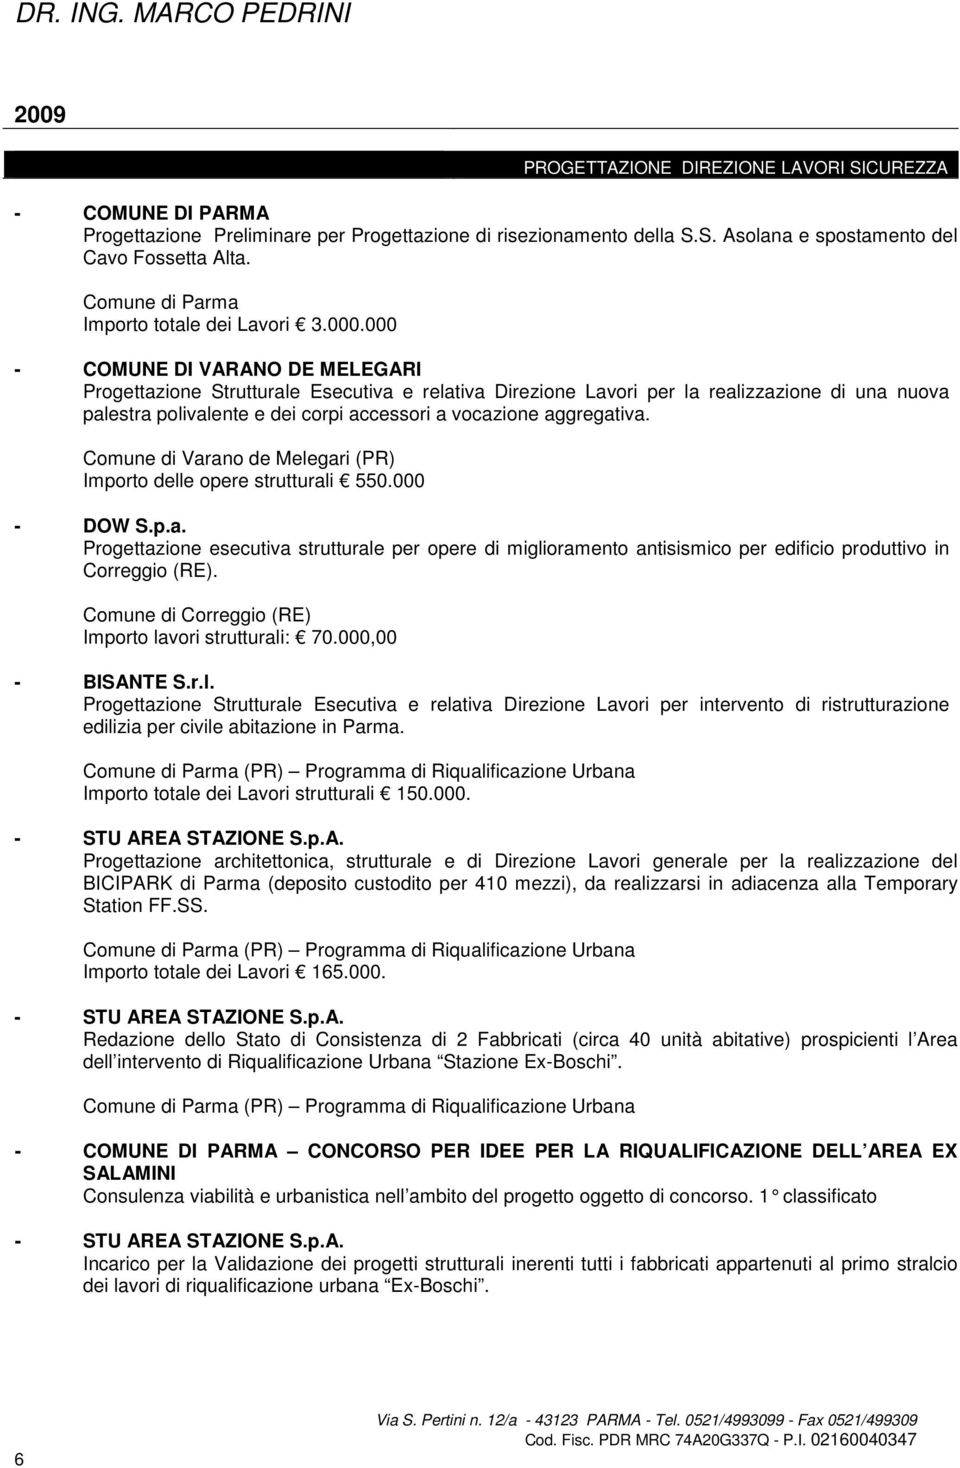 Comune di Varano de Melegari (PR) Importo delle opere strutturali 550.000 - DOW S.p.a. Progettazione esecutiva strutturale per opere di miglioramento antisismico per edificio produttivo in Correggio (RE).